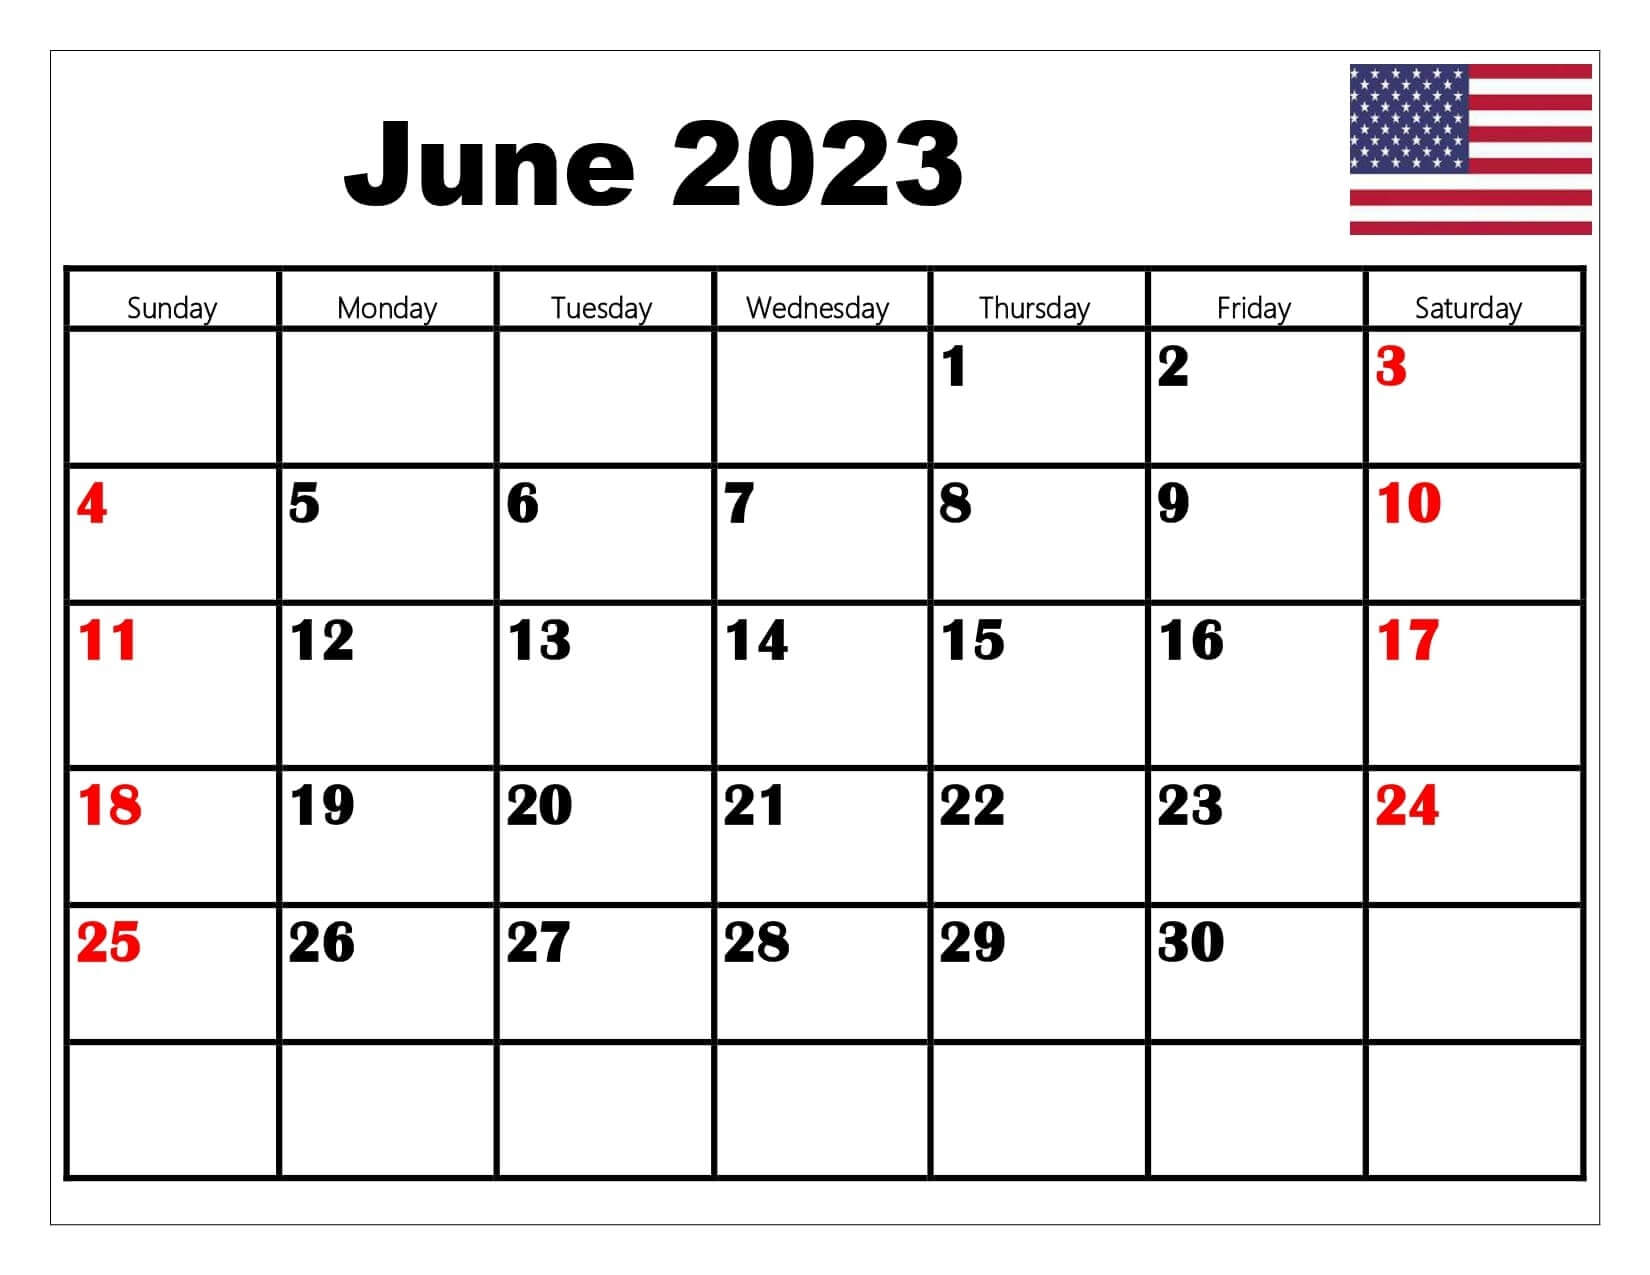 USA June 2023 Calendar